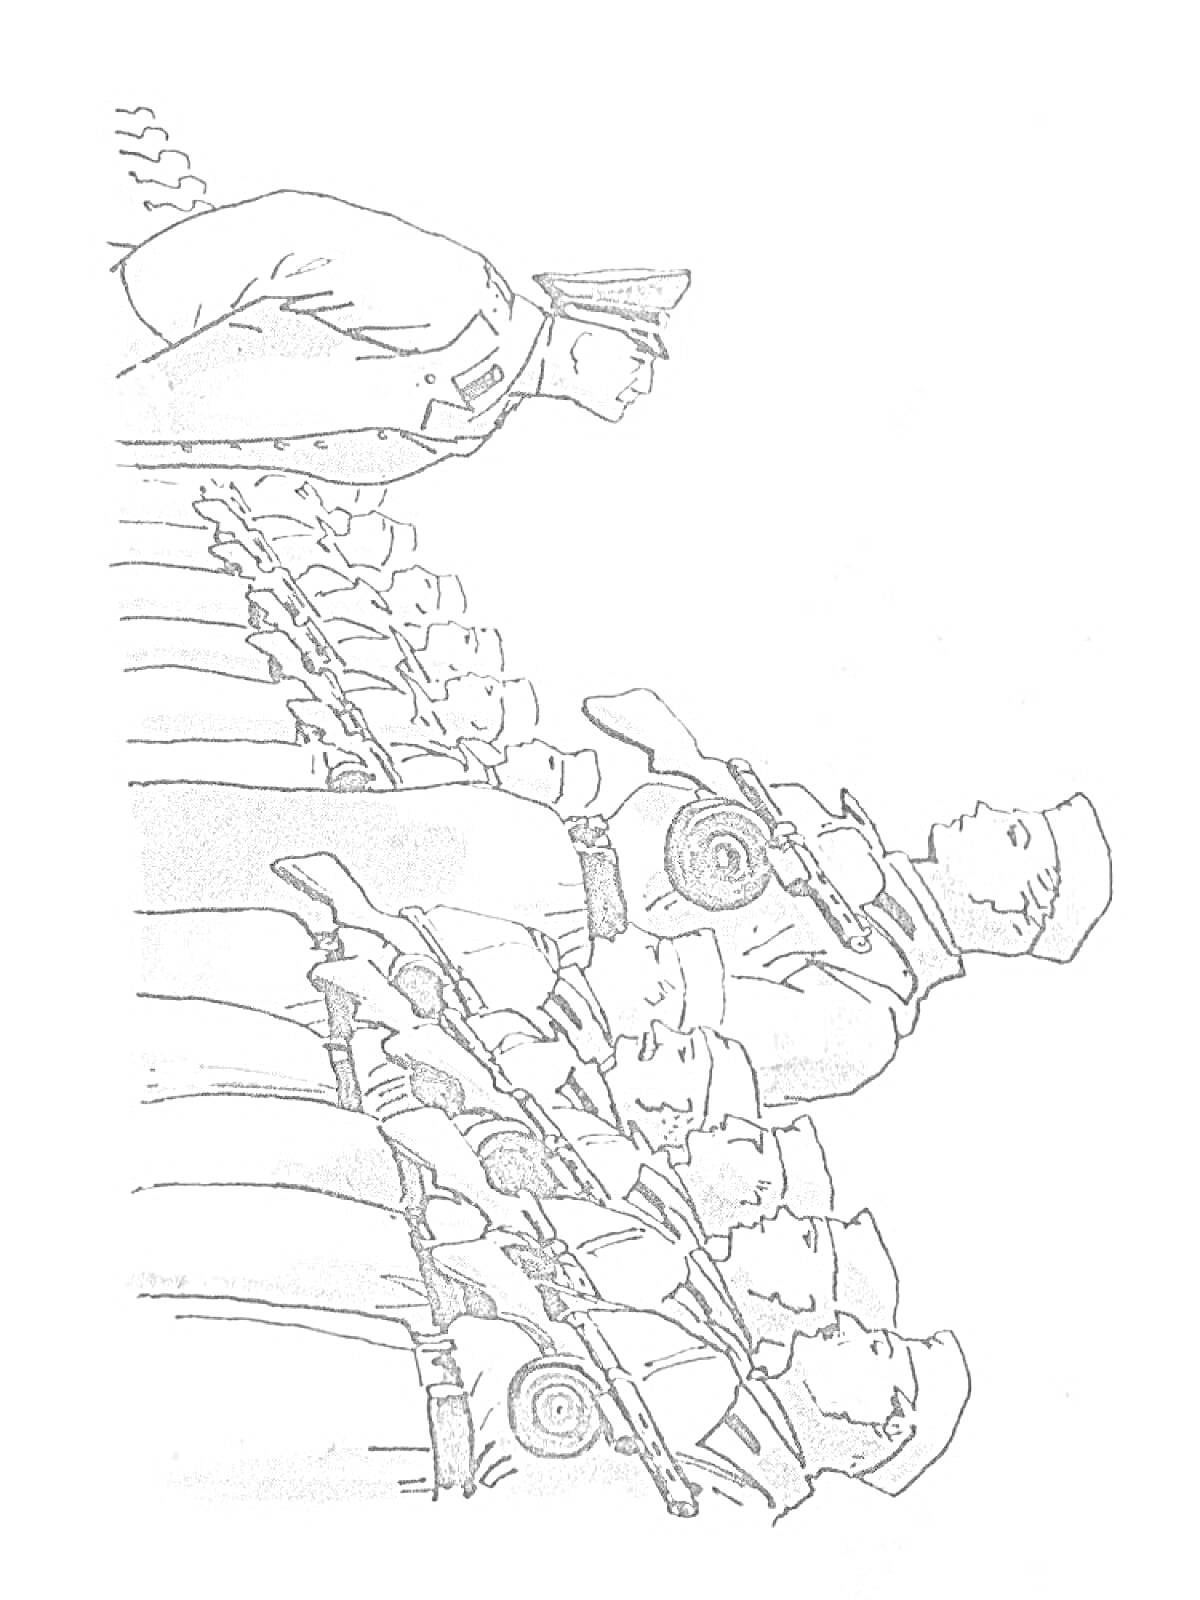 Дядя Степа на военной службе с солдатами, маршируя в строю с ружьями